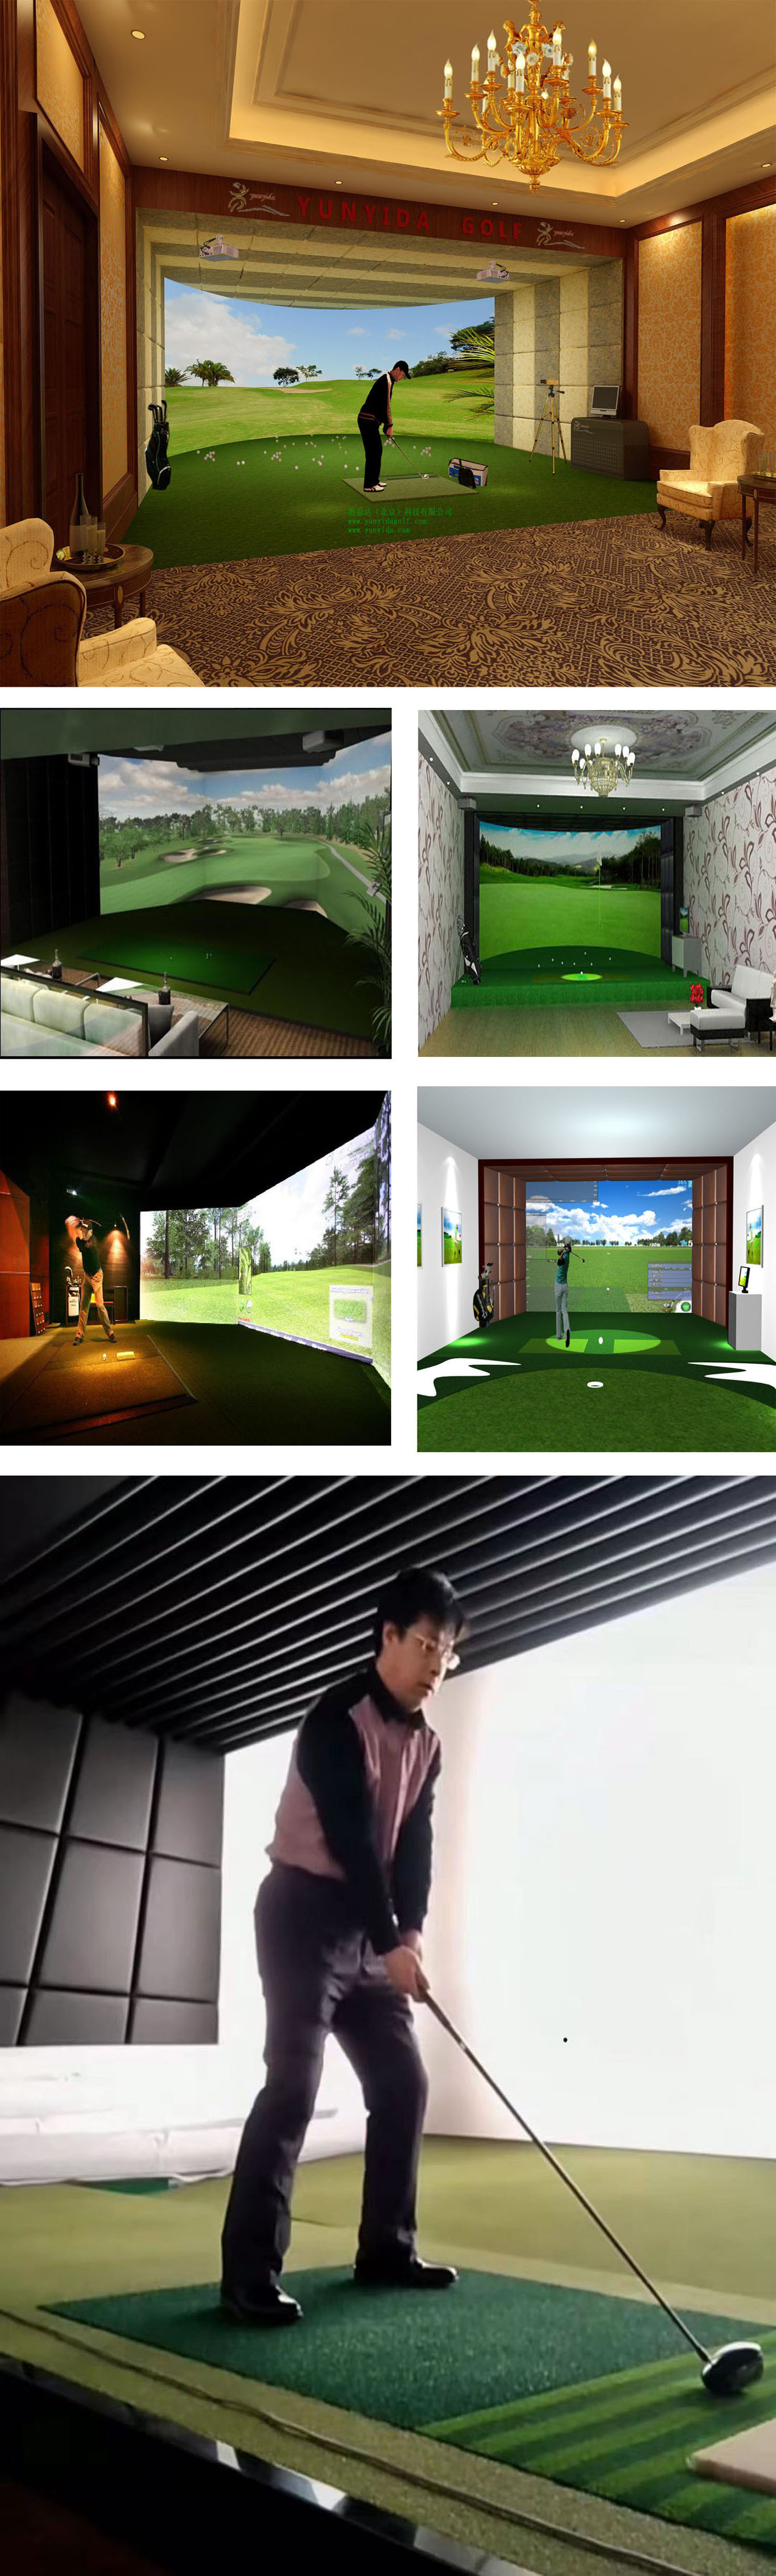 韩国室内高尔夫模拟 四.jpg